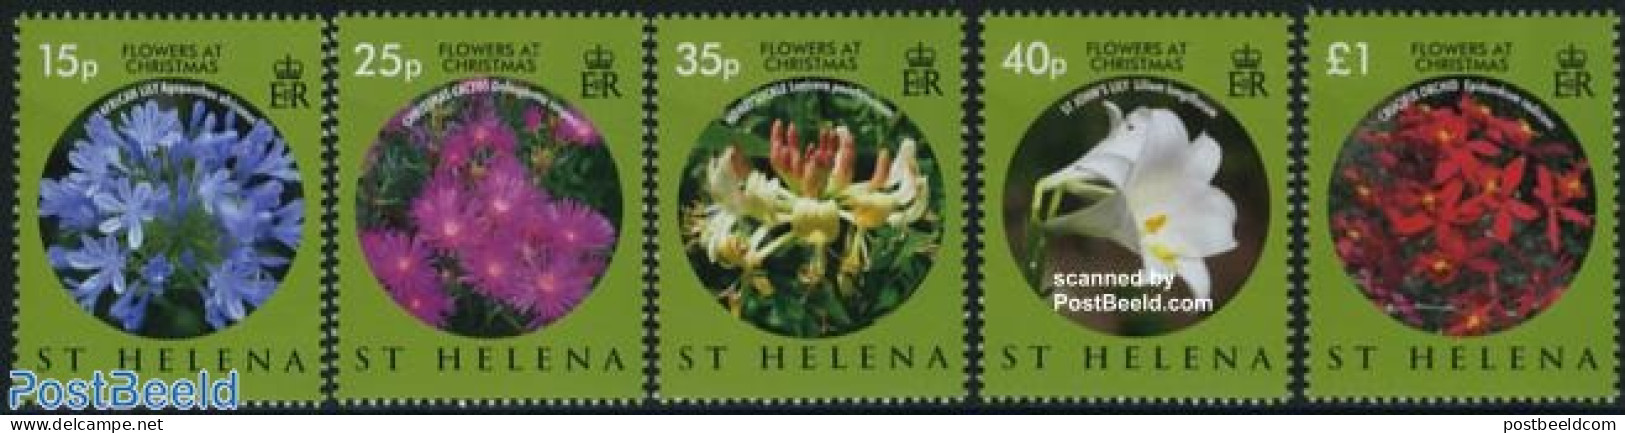 Saint Helena 2008 Christmas, Flowers 5v, Mint NH, Nature - Religion - Flowers & Plants - Christmas - Christmas